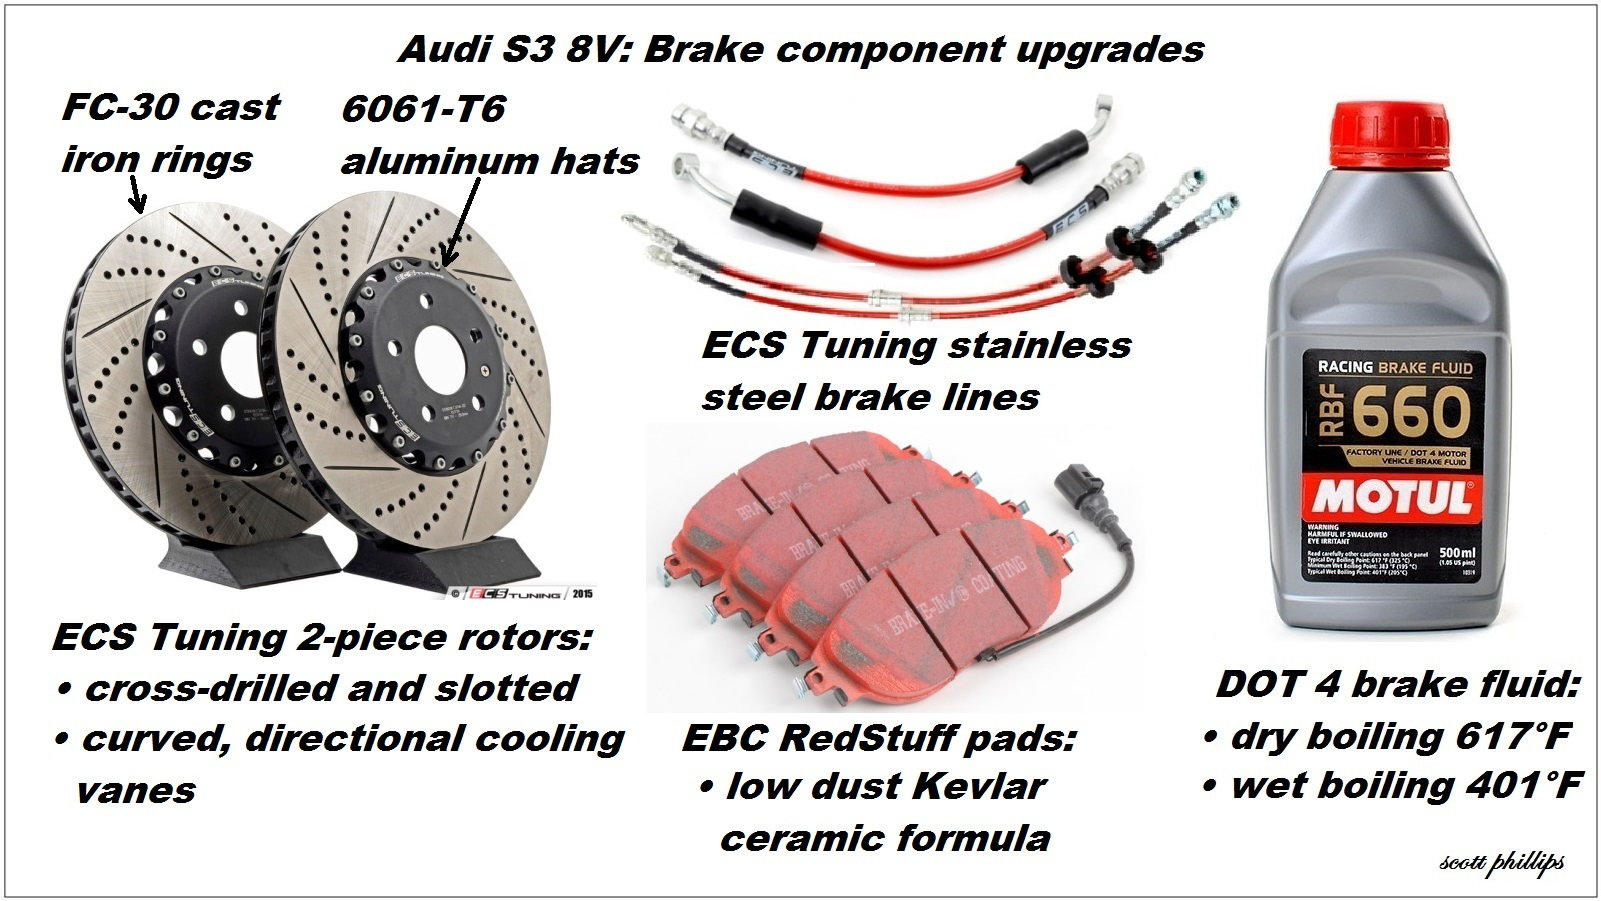 ECS tuning four-wheel brake upgrade